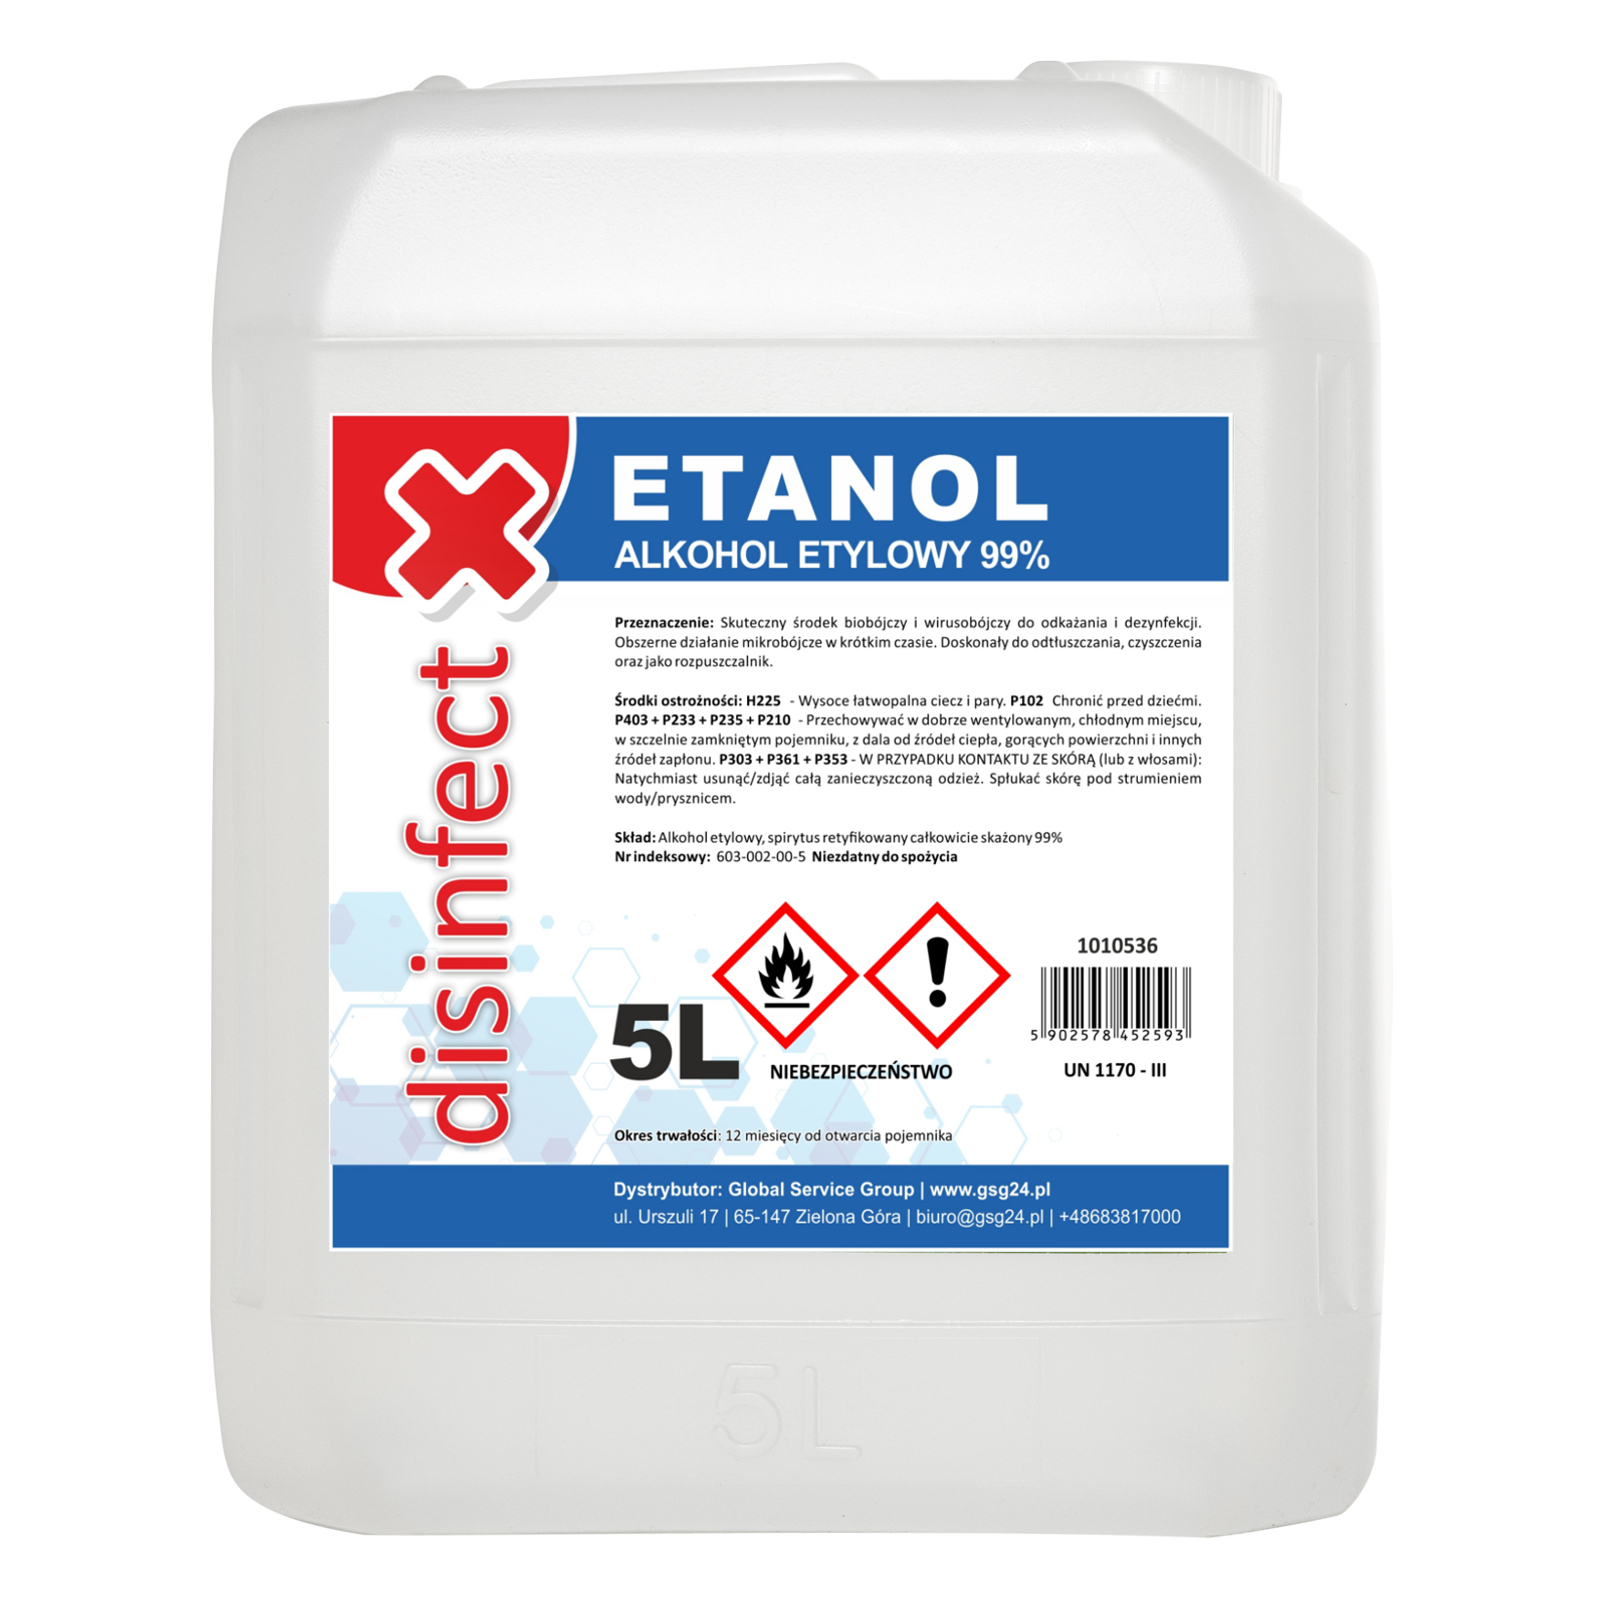 ETANOL - Alkohol etylowy skażony DISINFECT 99% 5L - sklep.odpady.org